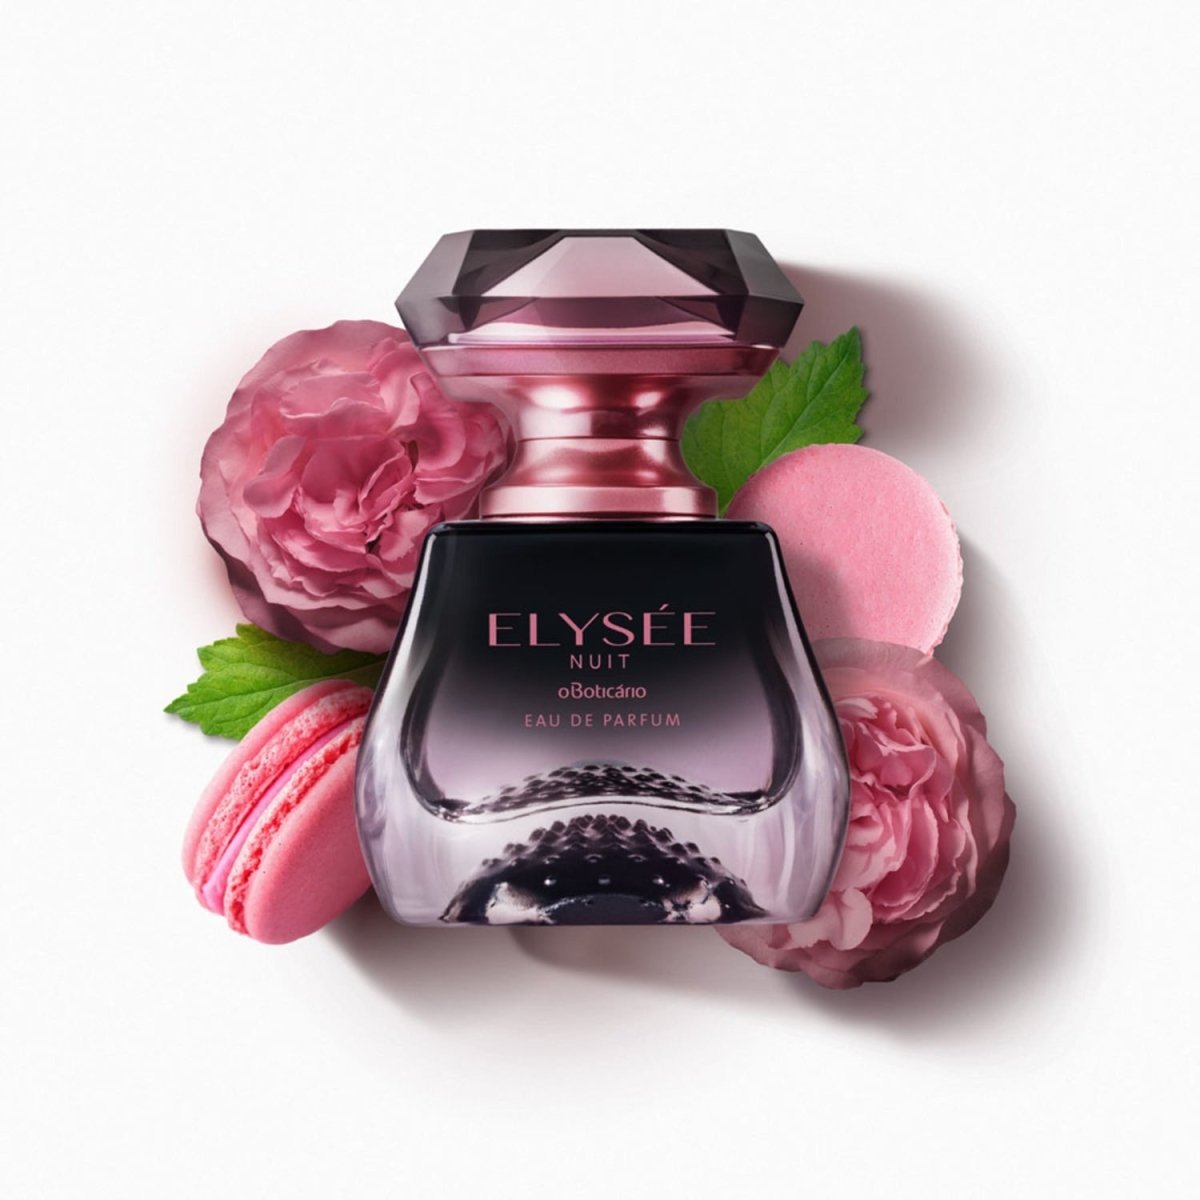 Elysée Nuit Eau de Parfum - Beaute Florale